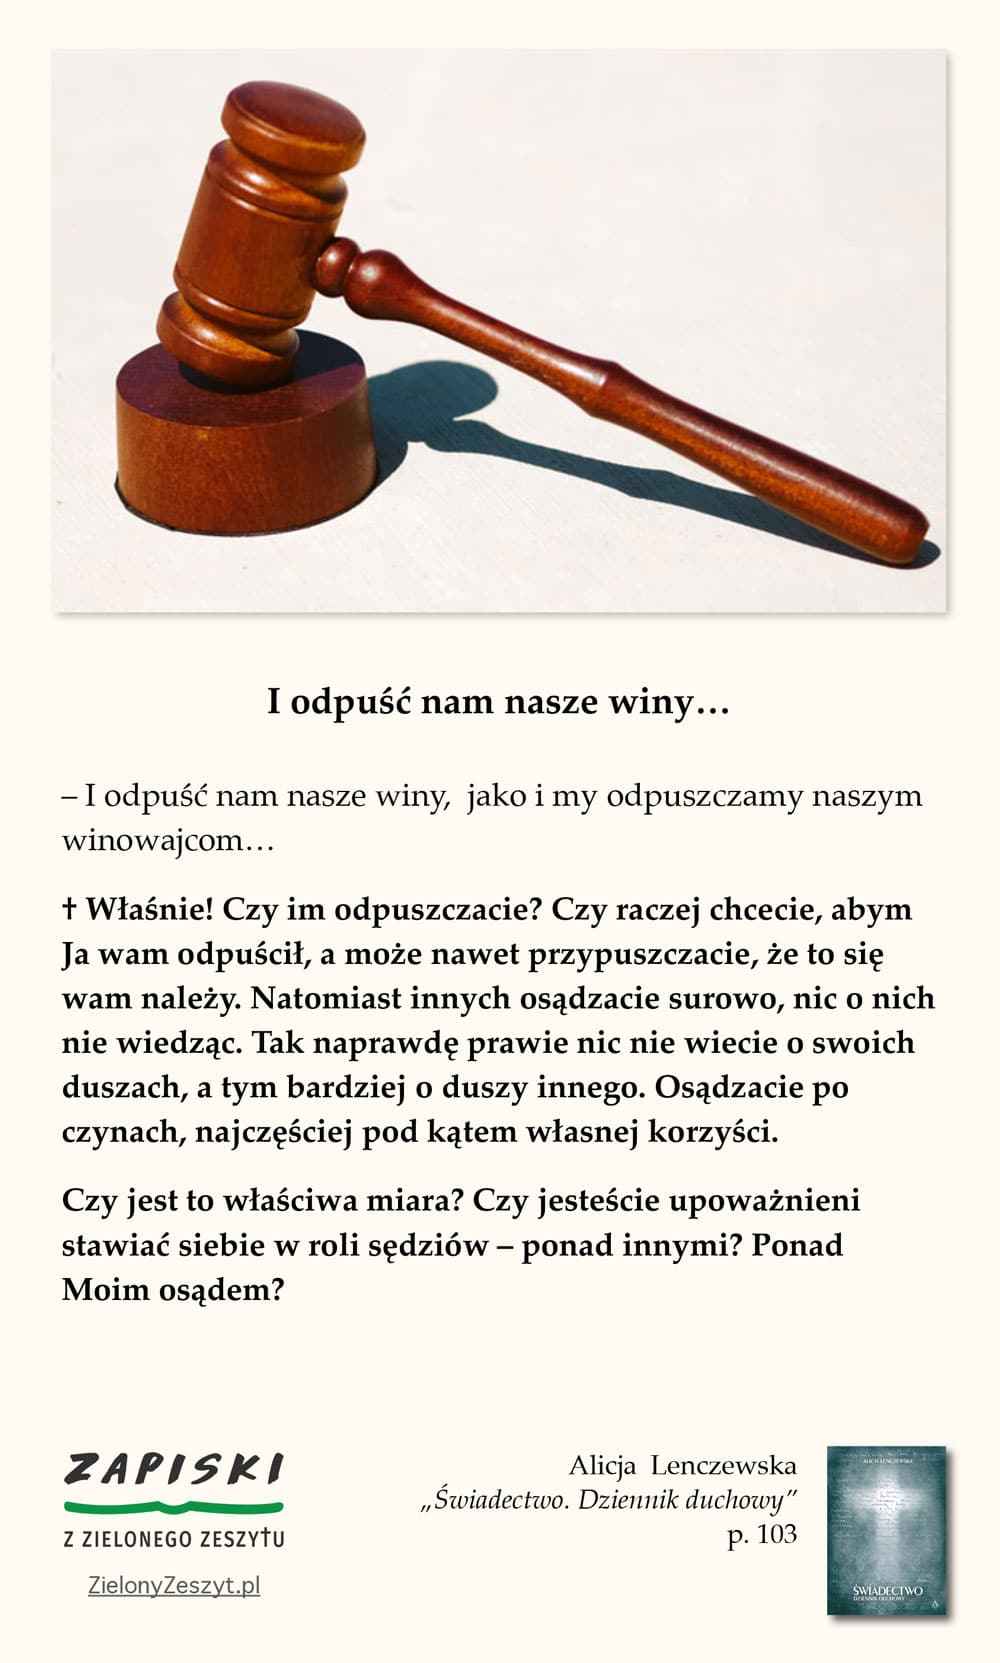 Alicja Lenczewska, „Świadectwo. Dziennik duchowy”, p. 103 (I odpuść nam nasze winy)